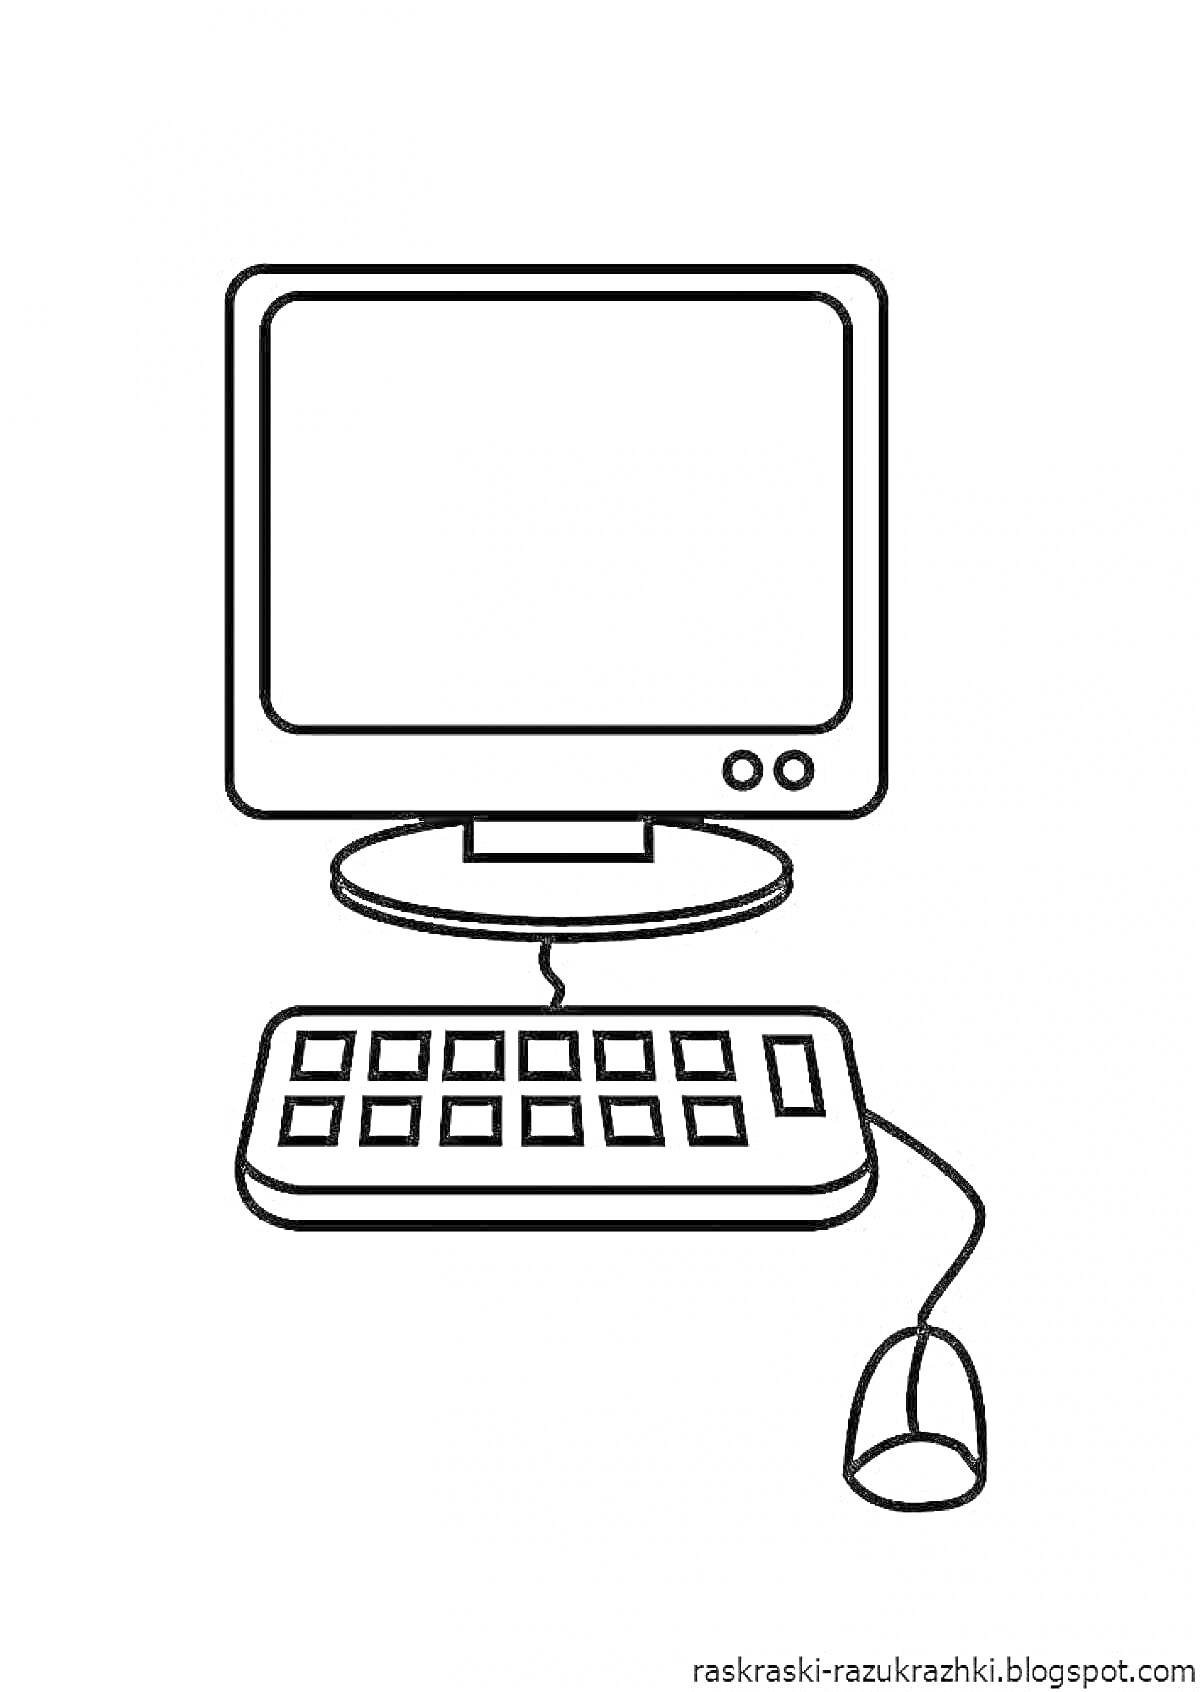 На раскраске изображено: Компьютер, Монитор, Клавиатура, Мышь, Техника, Для детей